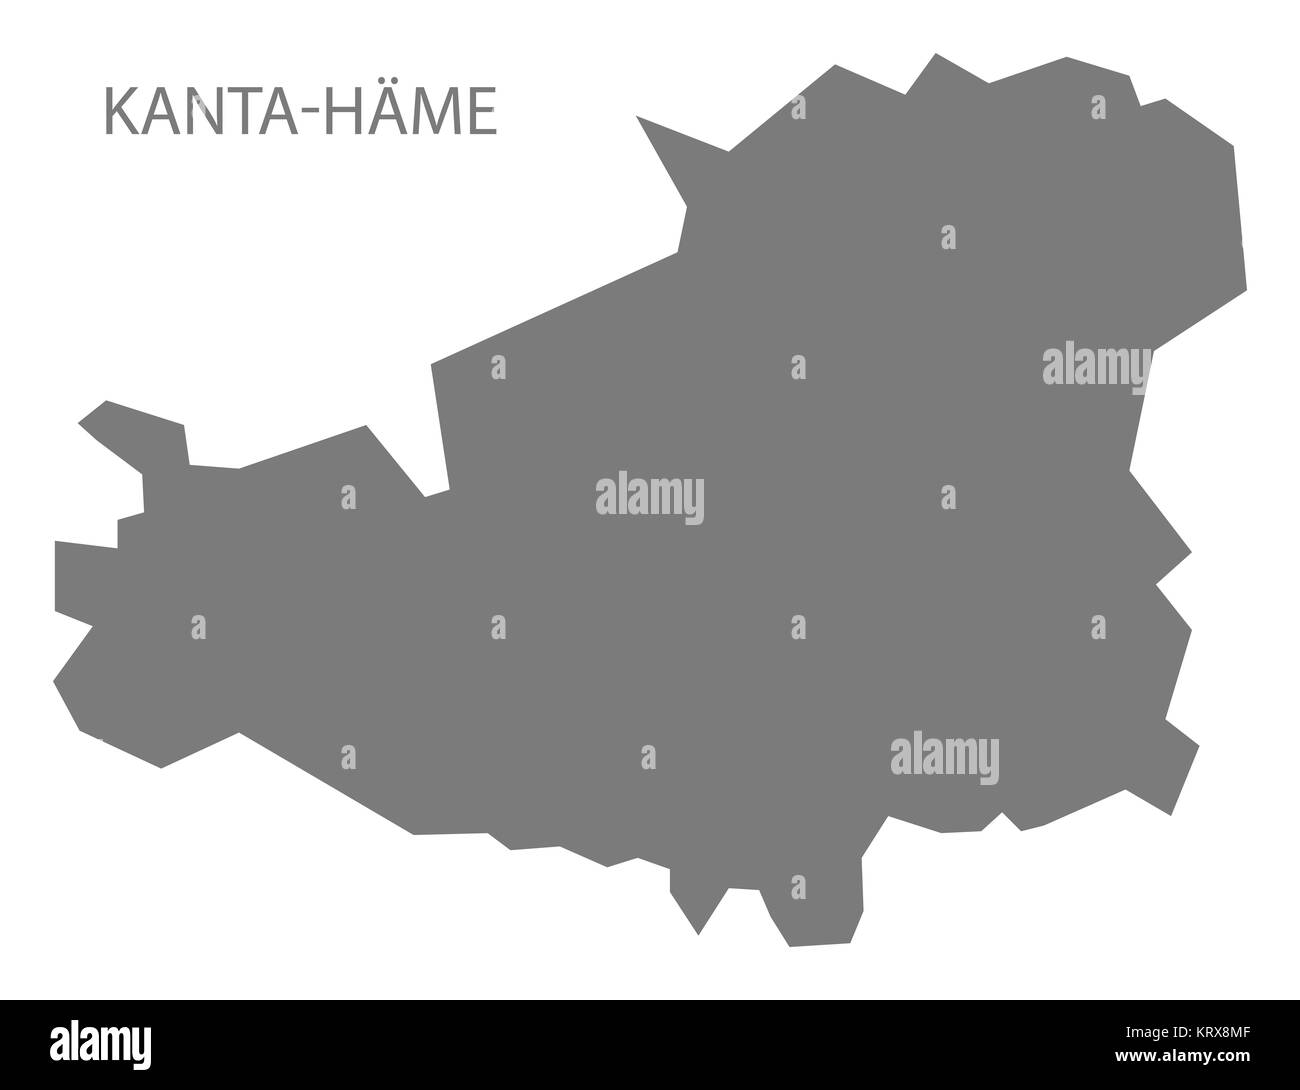 Kanta-Hame Finland Map grey Stock Photo